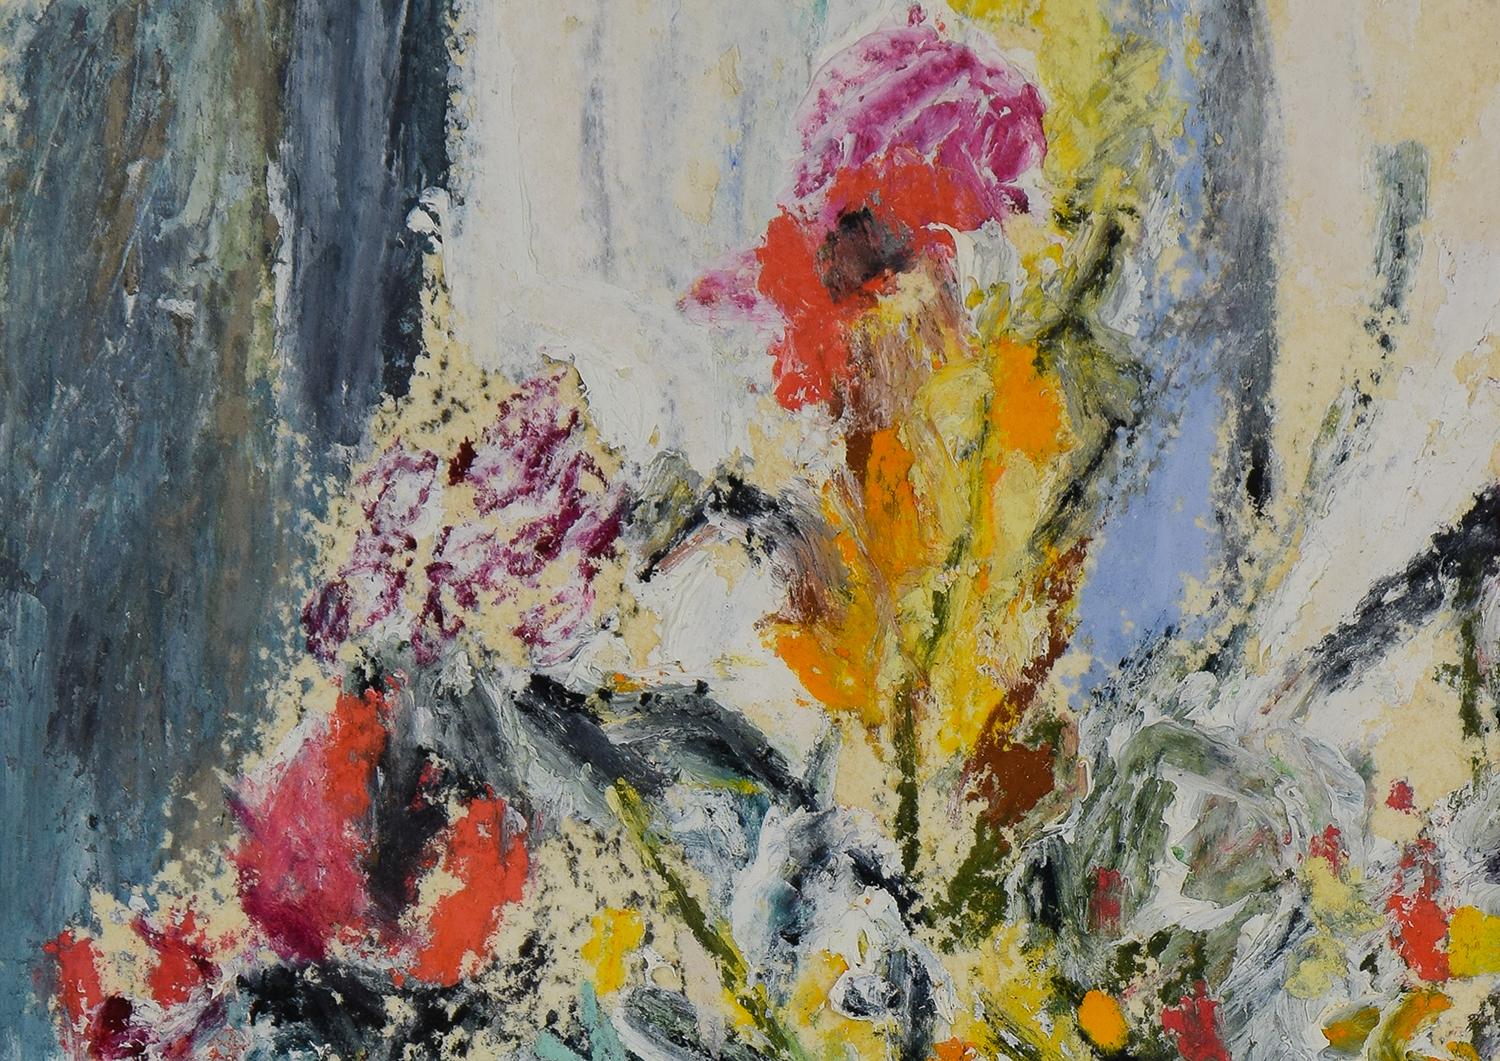 Fleurs von Hugues Pissarro dit Pomié (geb. 1935)
Öl und Pastell auf Karton
26,5 x 17,8 cm (10 ³/₈ x 7 Zoll)
Signiert unten links H. Claude Pissarro und datiert 1993 unten rechts

Dieses Werk wird von einem Echtheitszertifikat des Künstlers